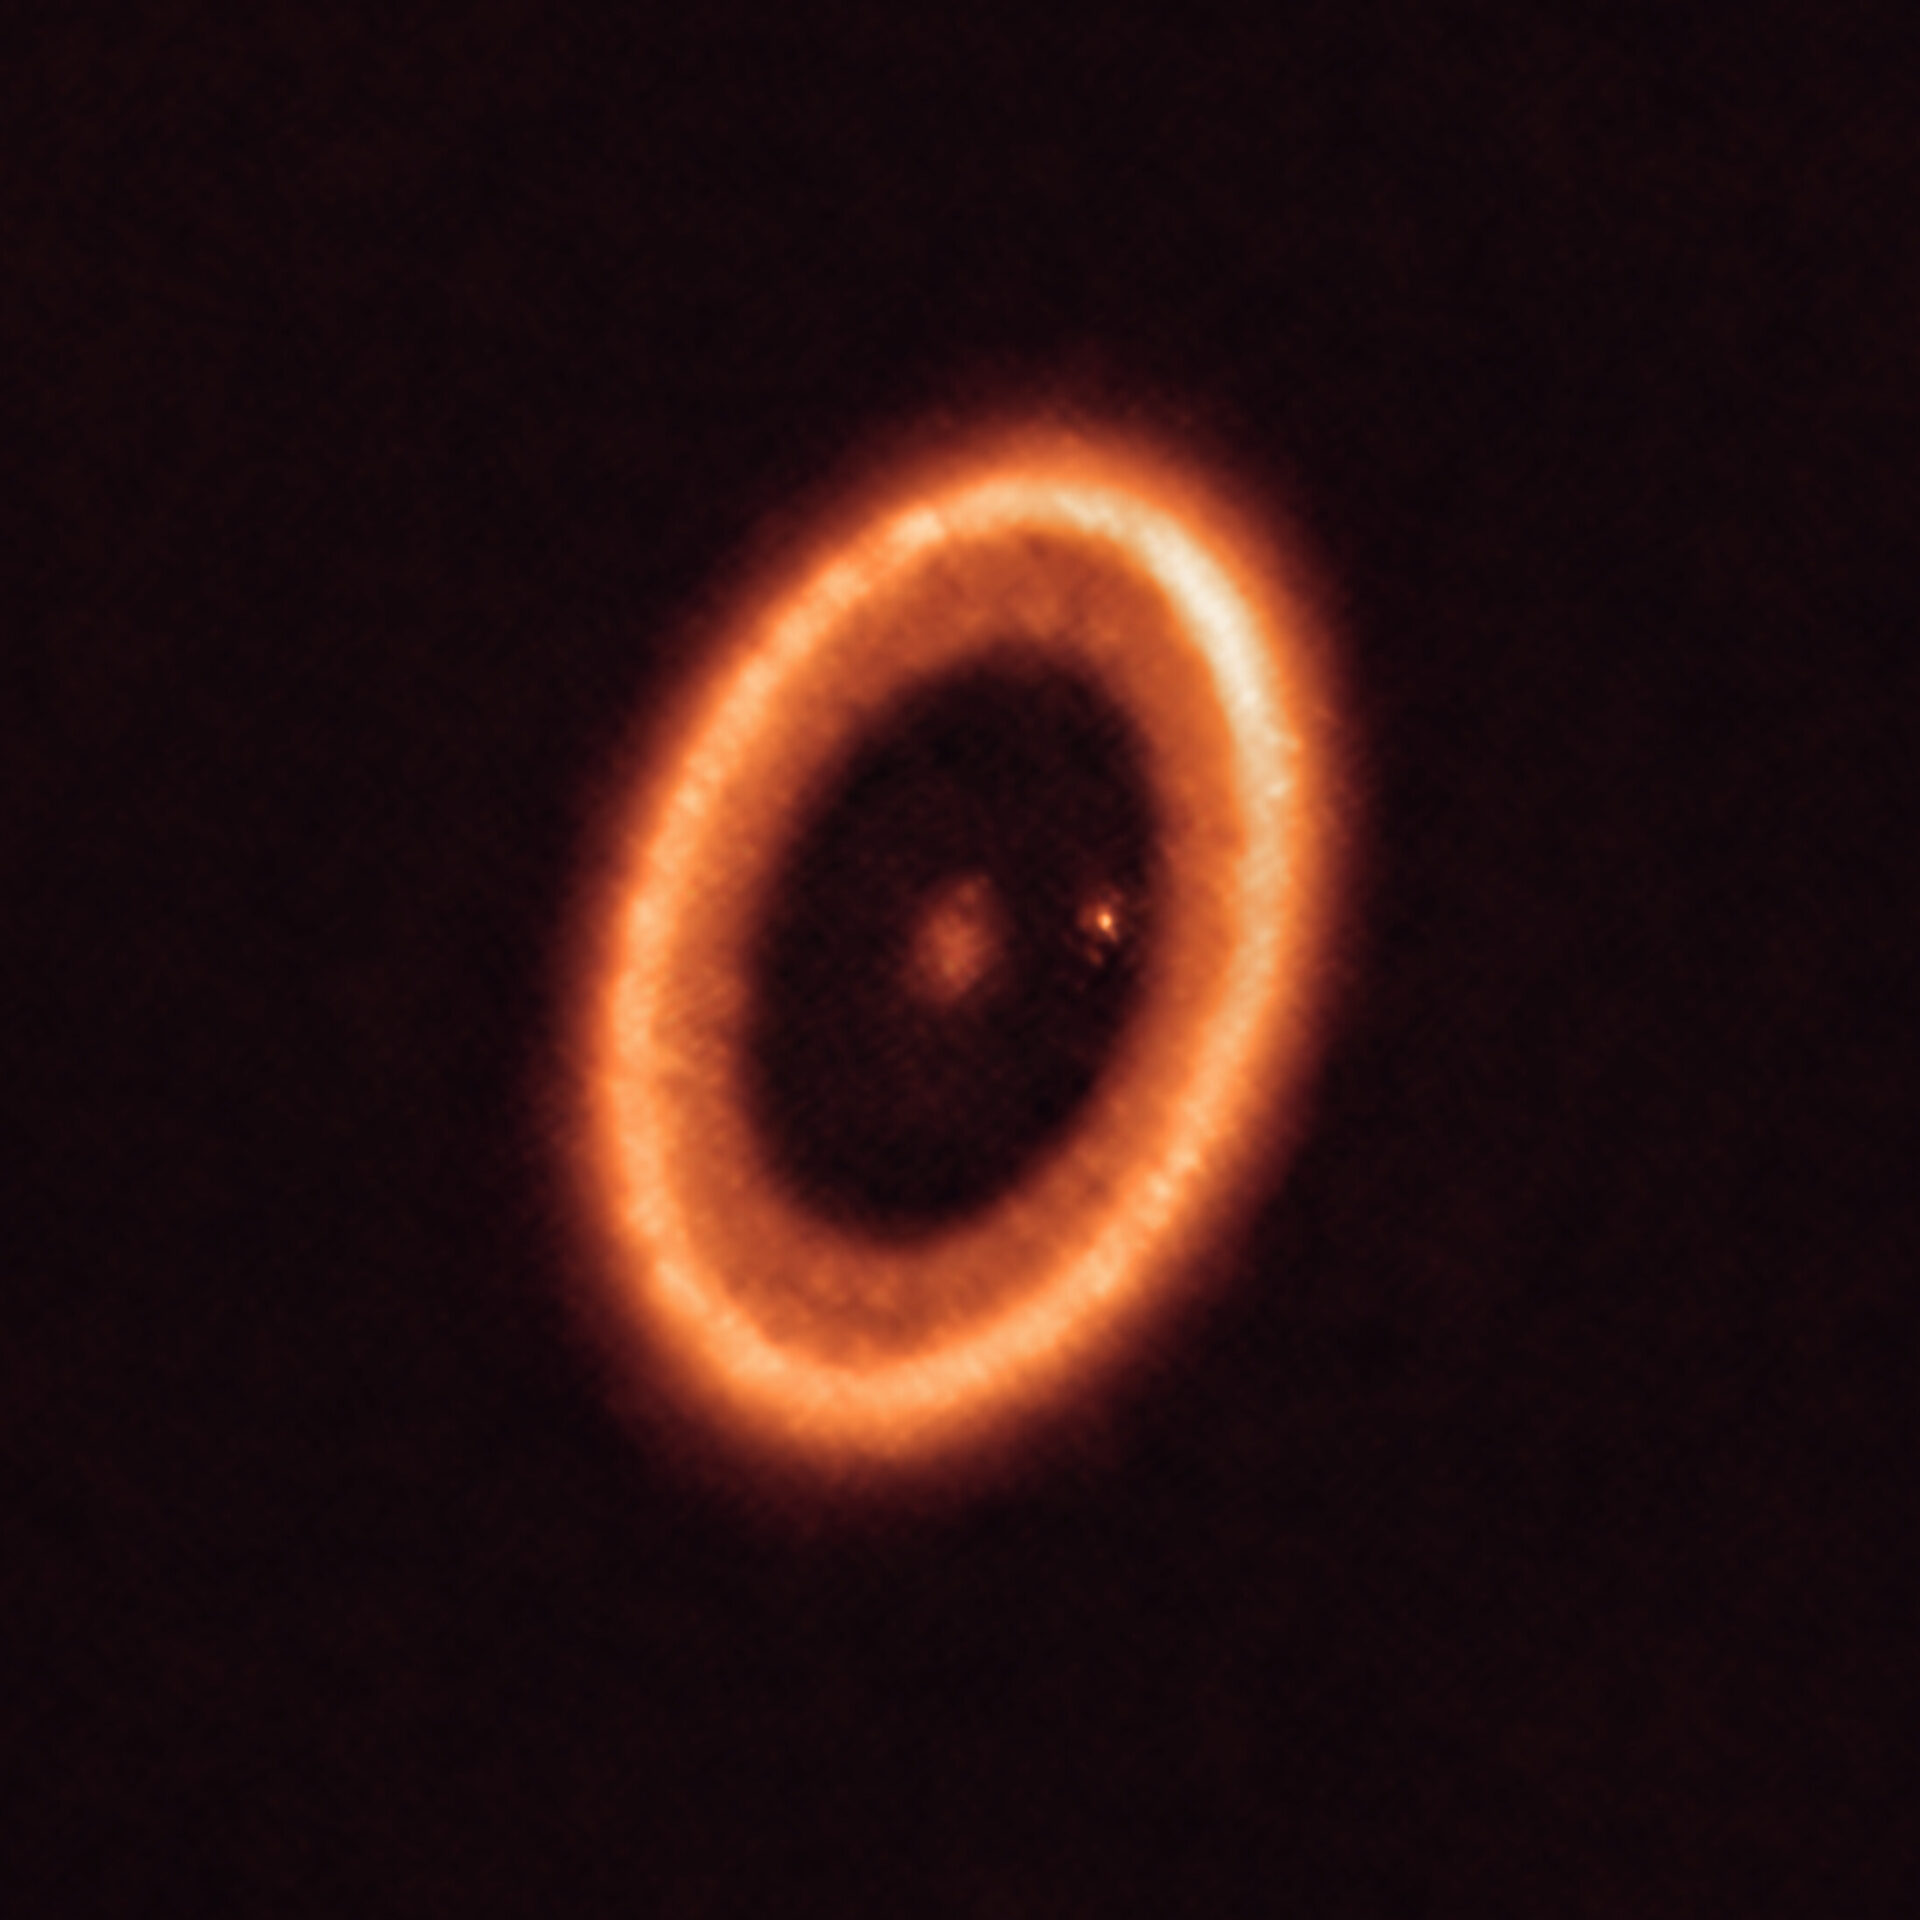 Esta imagen, tomada con el Atacama Large Millimeter/submillimeter Array (ALMA), del que ESO es socio, muestra el sistema PDS 70, ubicado a casi 400 años luz de distancia y aún en proceso de formación. El sistema cuenta con una estrella en su centro y al menos dos planetas orbitando alrededor de ella, PDS 70b (no visible en la imagen) y PDS 70c, rodeado por un disco circumplanetario (el punto a la derecha de la estrella). Los planetas han horadado un hueco en el disco circunestelar (la estructura en forma de anillo que domina la imagen) a medida que engullían material del propio disco, creciendo en tamaño. Durante este proceso, PDS 70c adquirió su propio disco circumplanetario, que contribuye al crecimiento del planeta y en el cual se pueden formar lunas. Crédito: ALMA (ESO/NAOJ/NRAO)/Benisty et al.